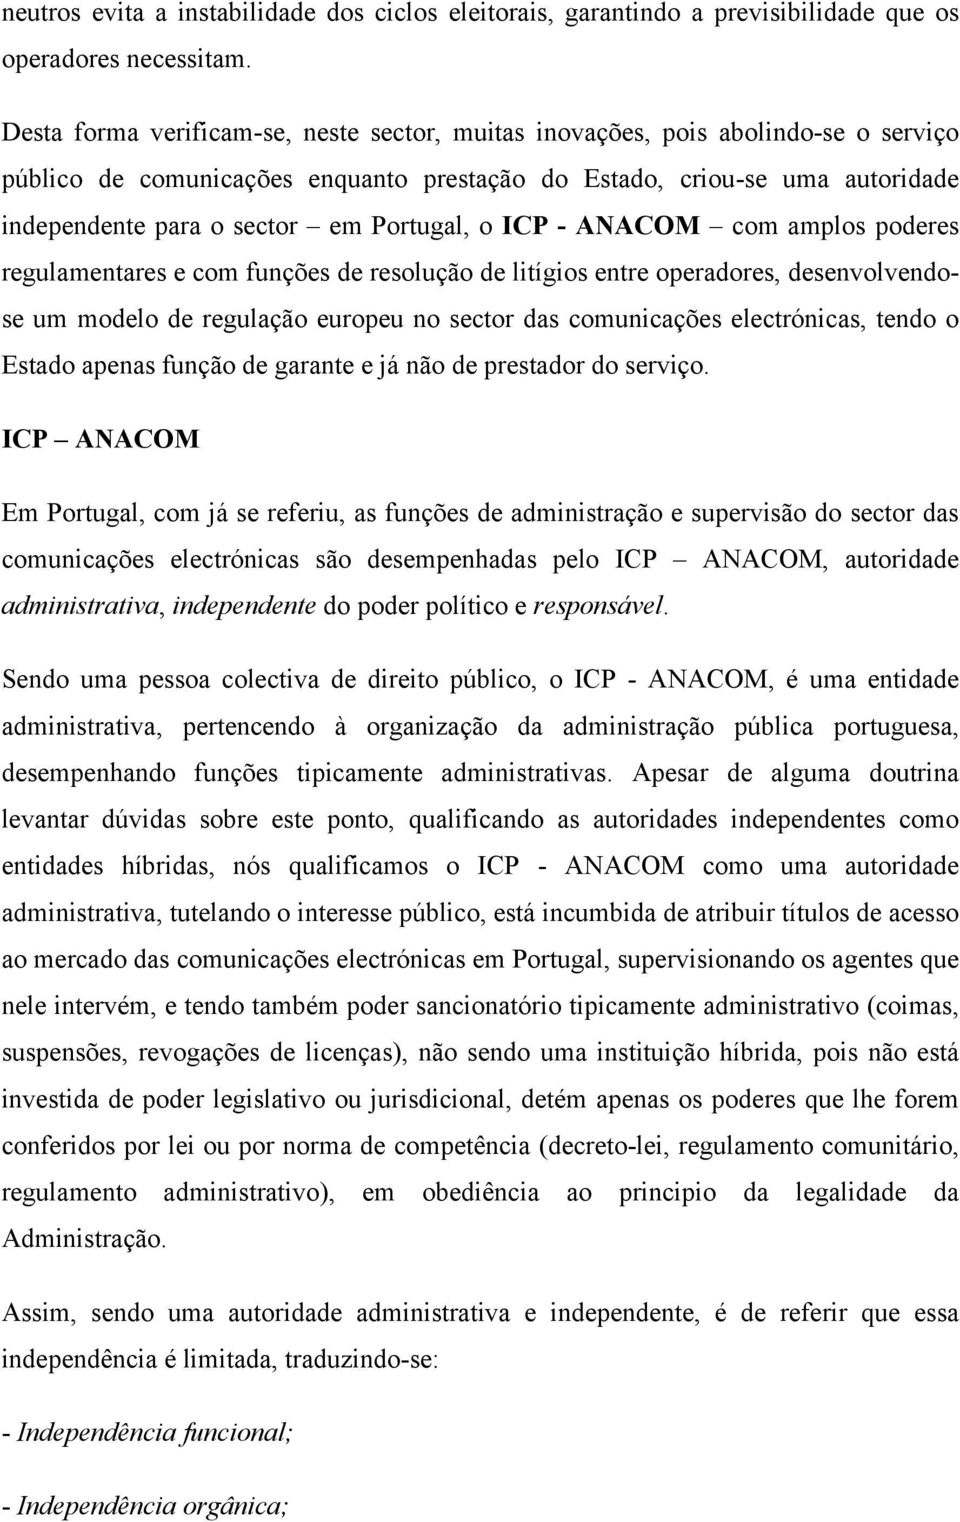 Portugal, o ICP - ANACOM com amplos poderes regulamentares e com funções de resolução de litígios entre operadores, desenvolvendose um modelo de regulação europeu no sector das comunicações